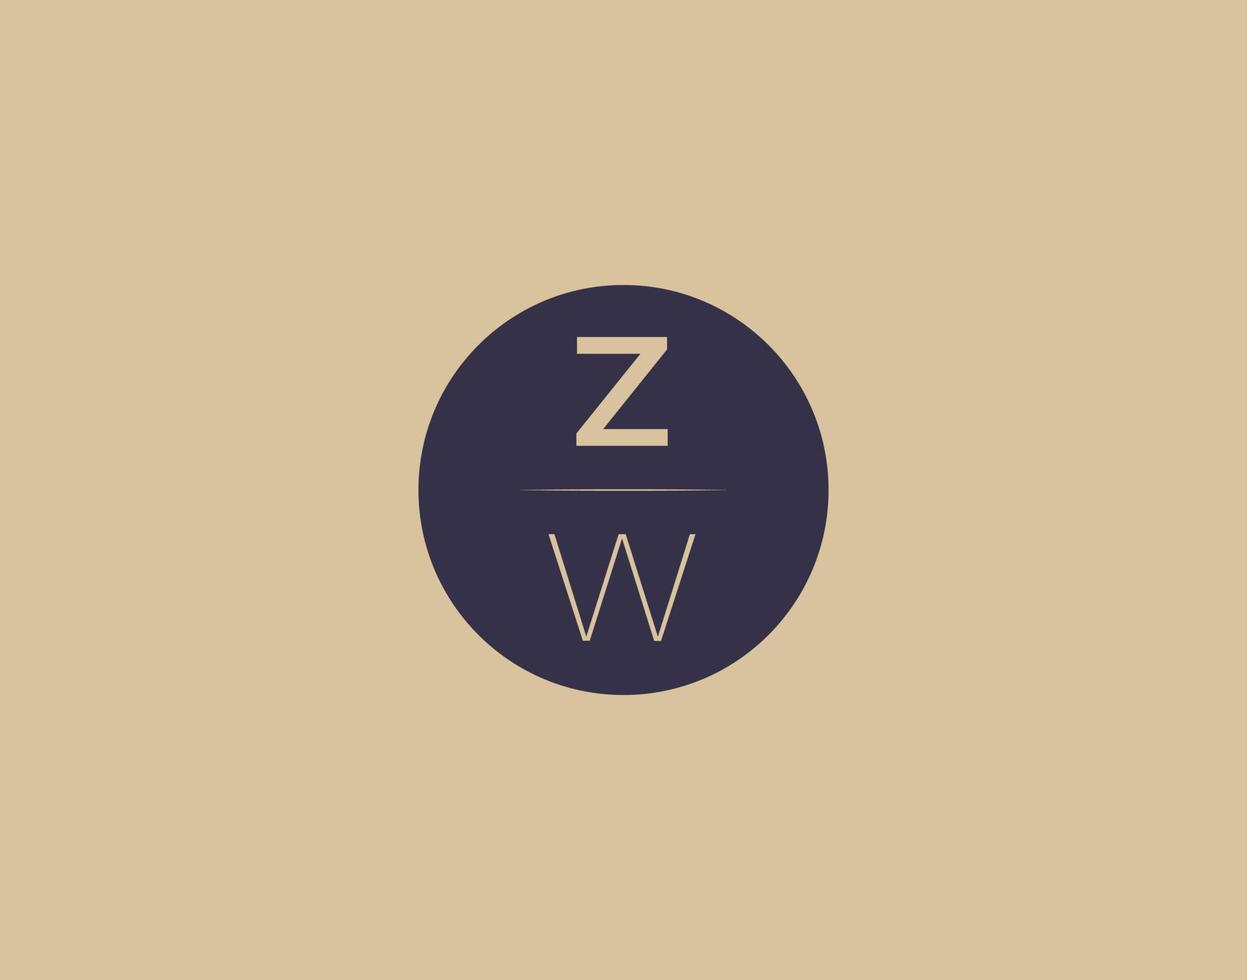 Imágenes de vector de diseño de logotipo elegante moderno de letra zw